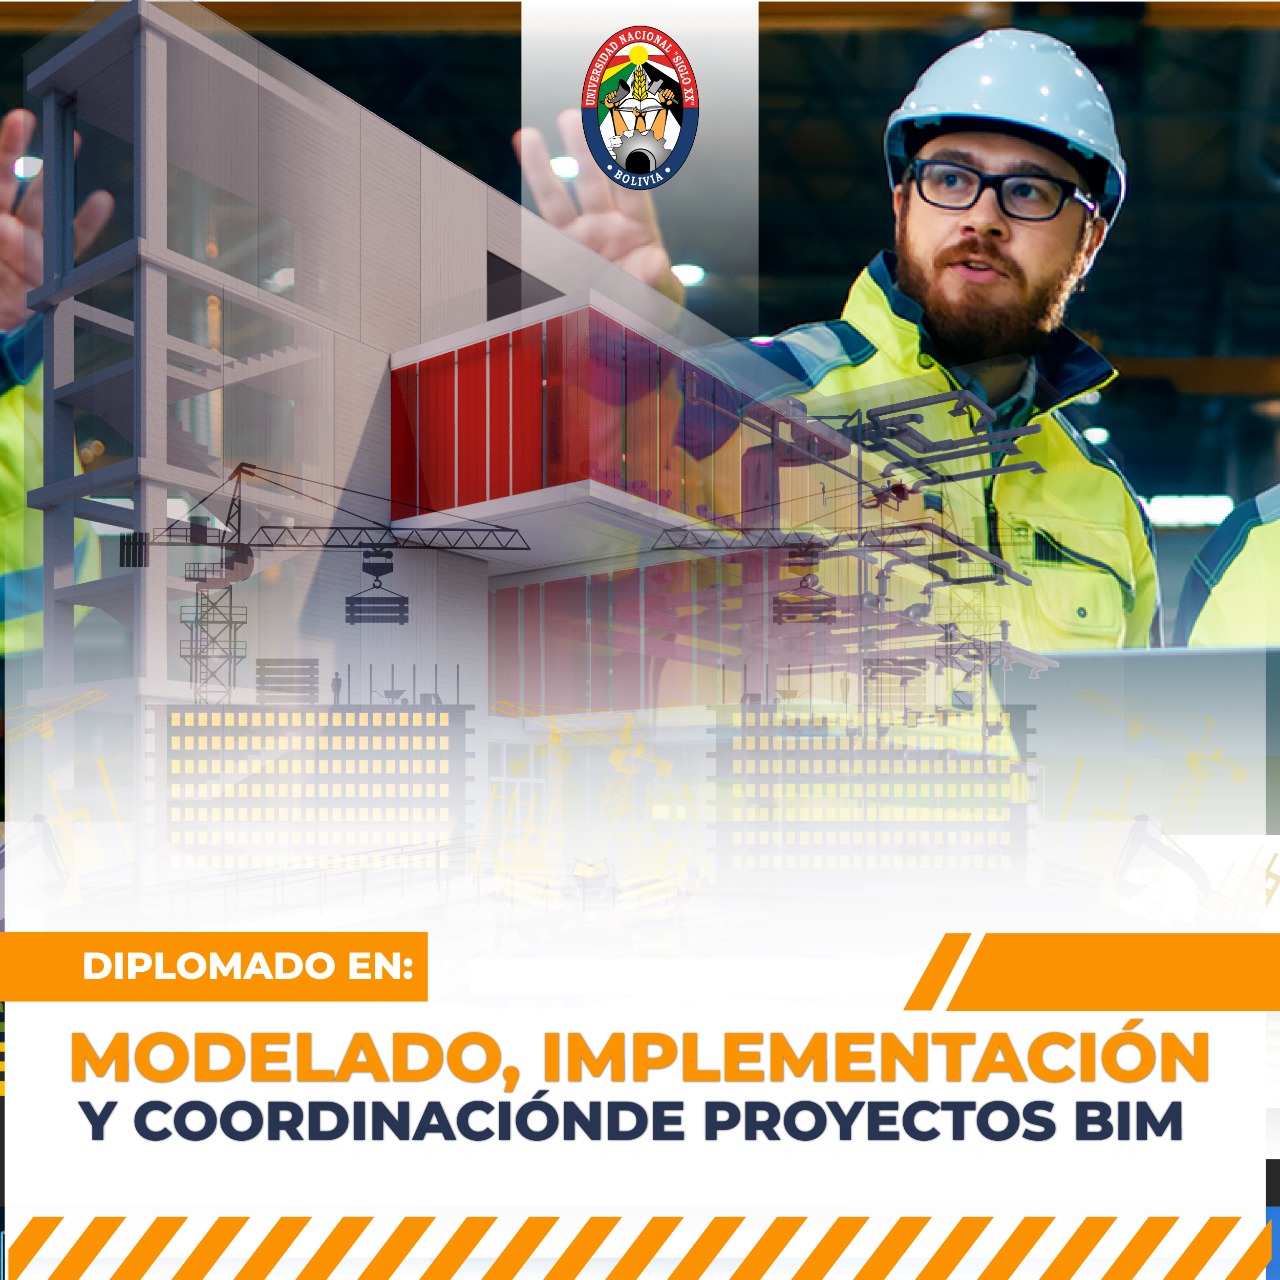 Diplomado Modelado, Implementación y Coordinación de Proyectos BIM